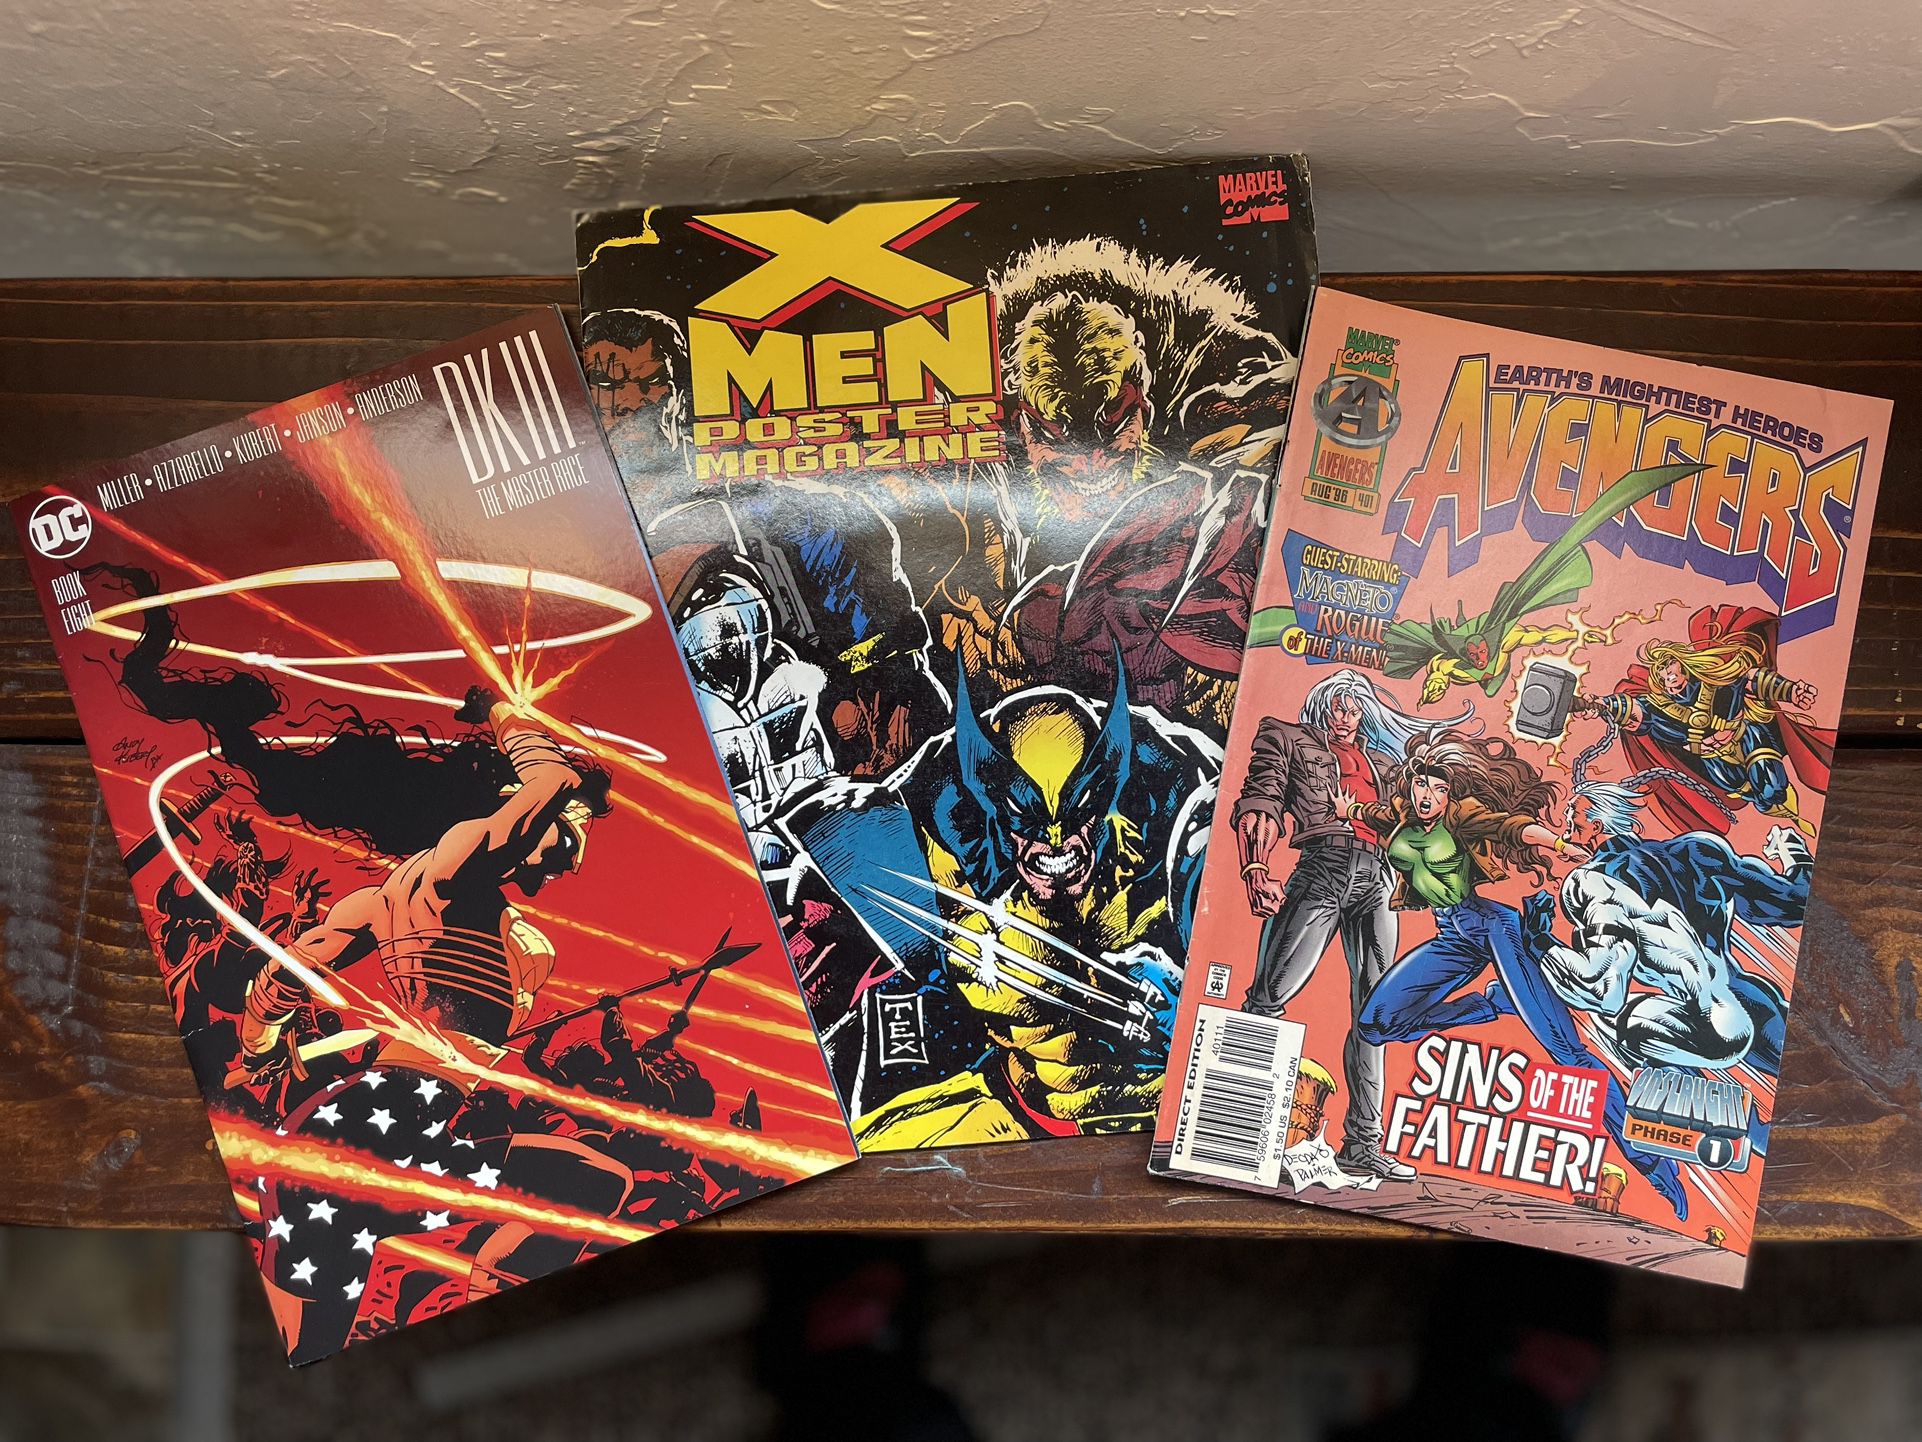 Box Of Comics